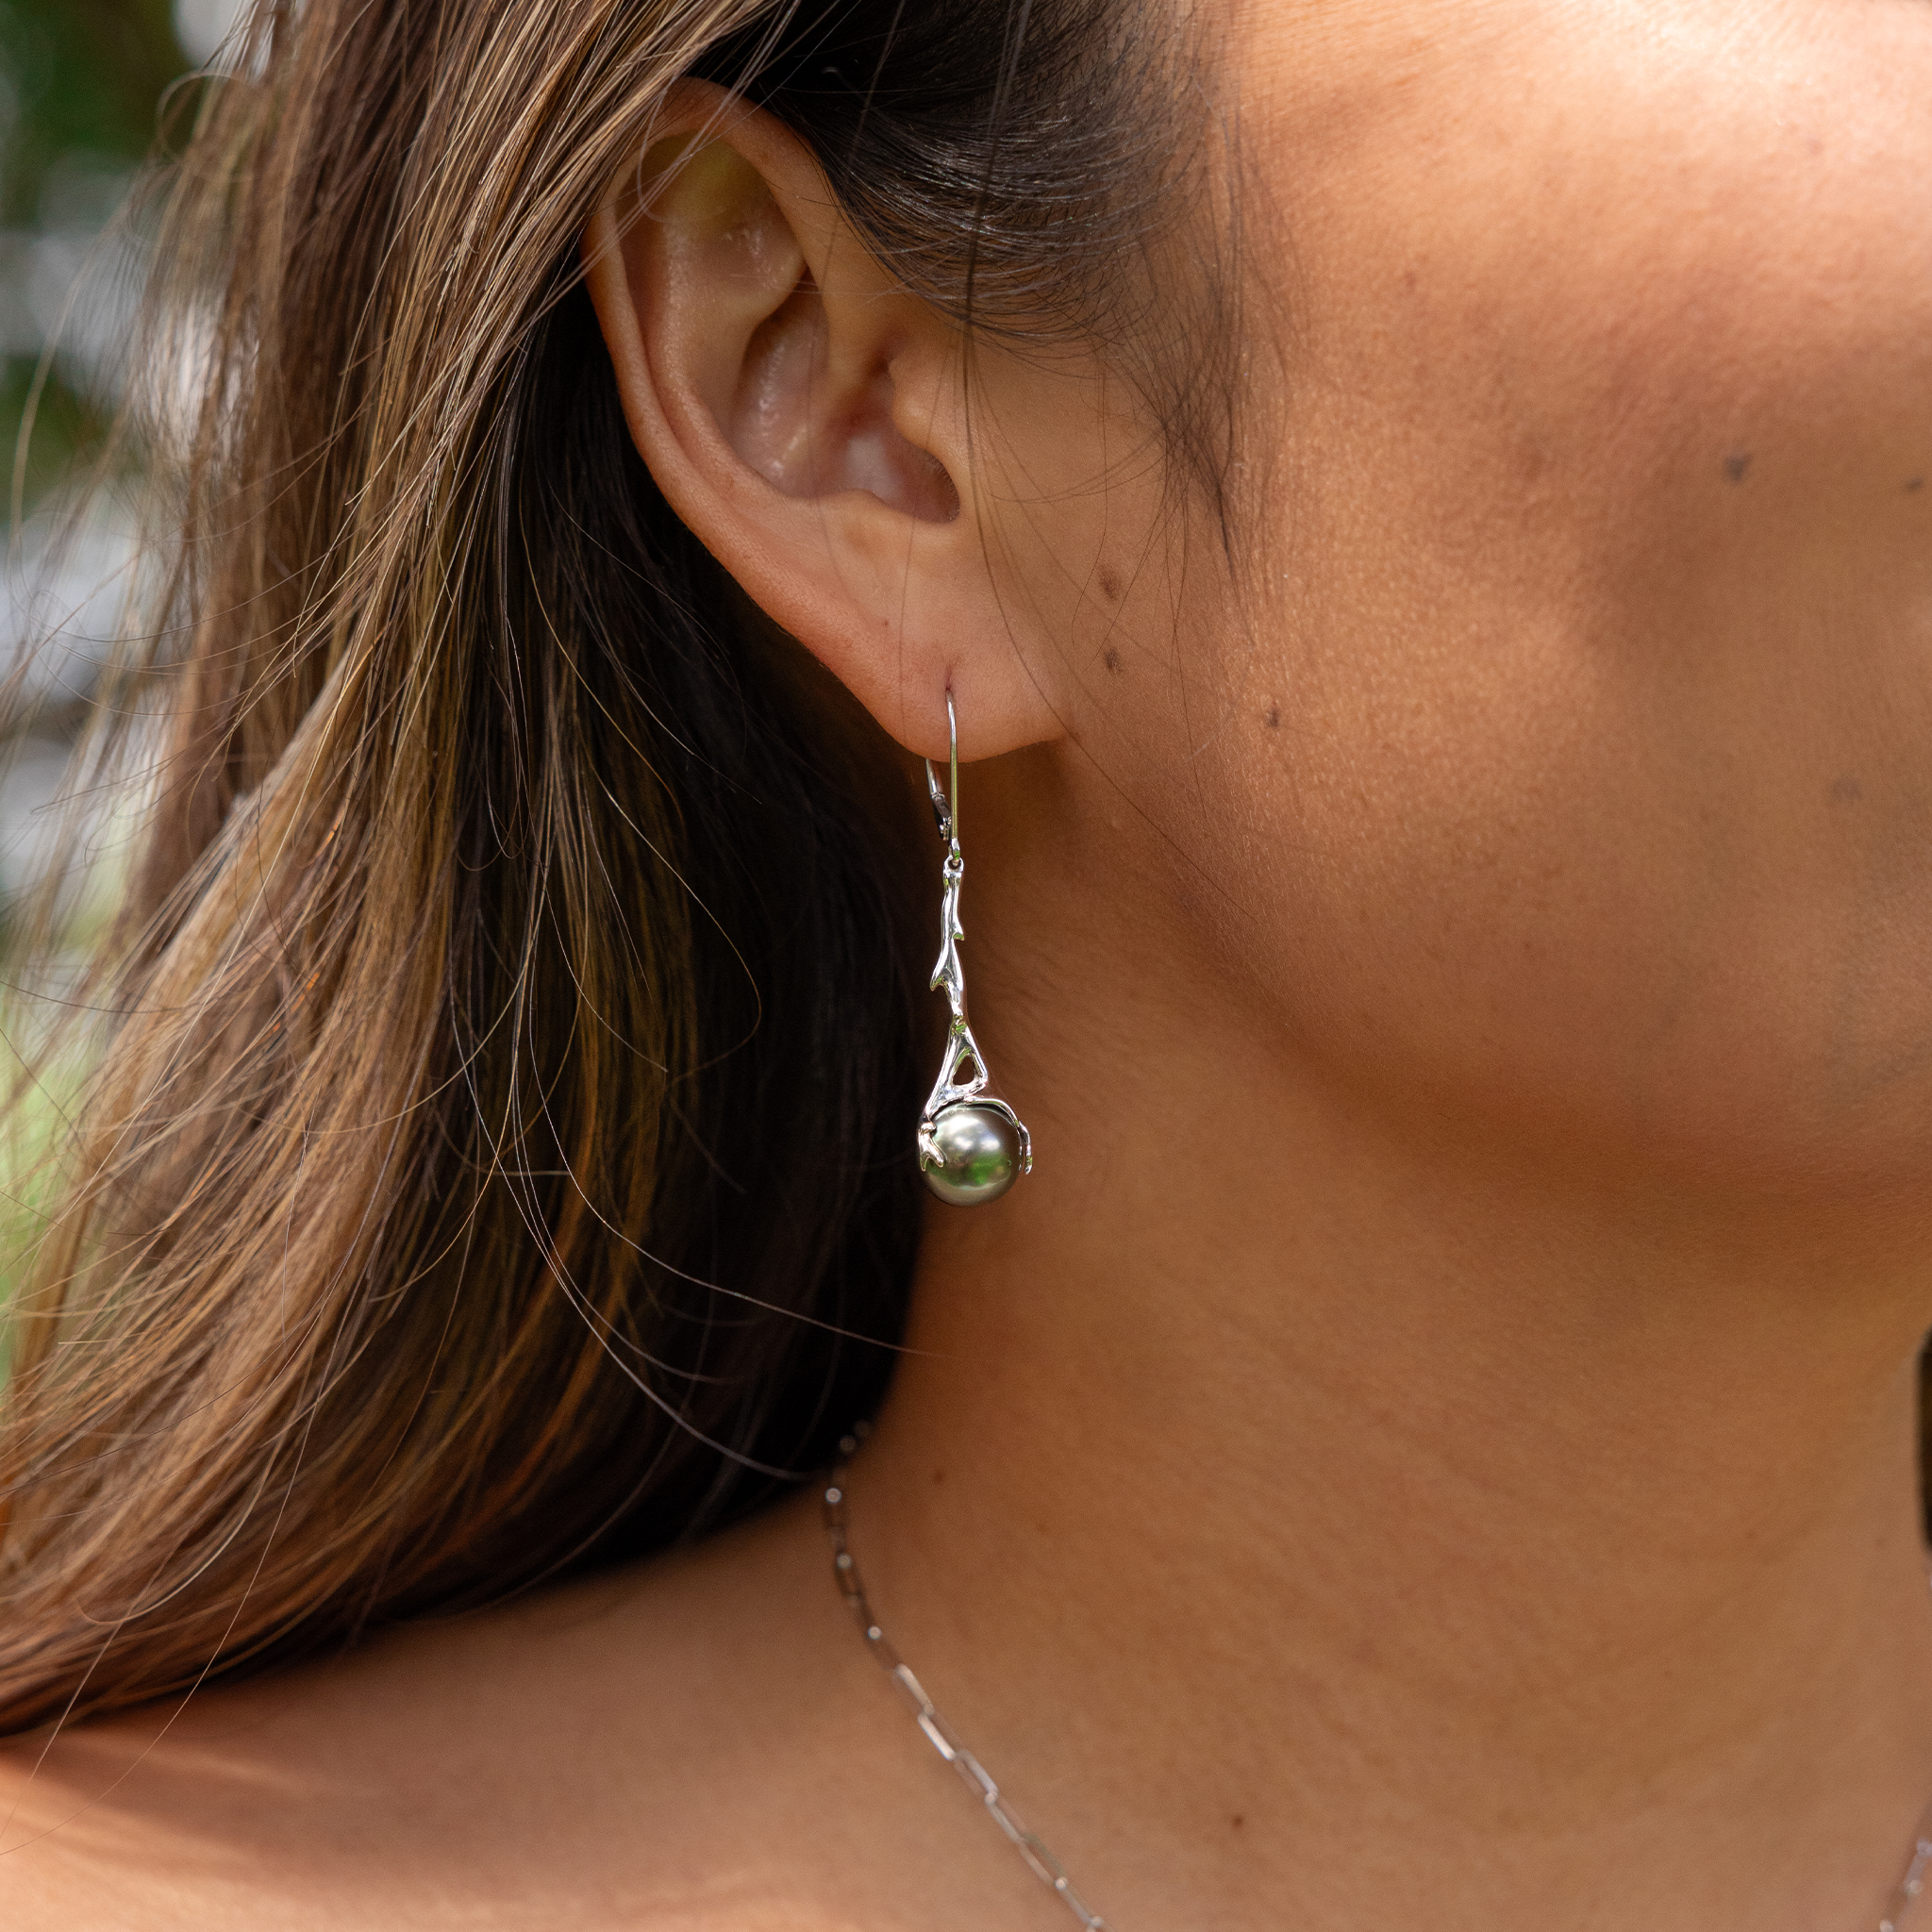 Heritage Tahitian Black Pearl Earrings in White Gold - 9-10mm